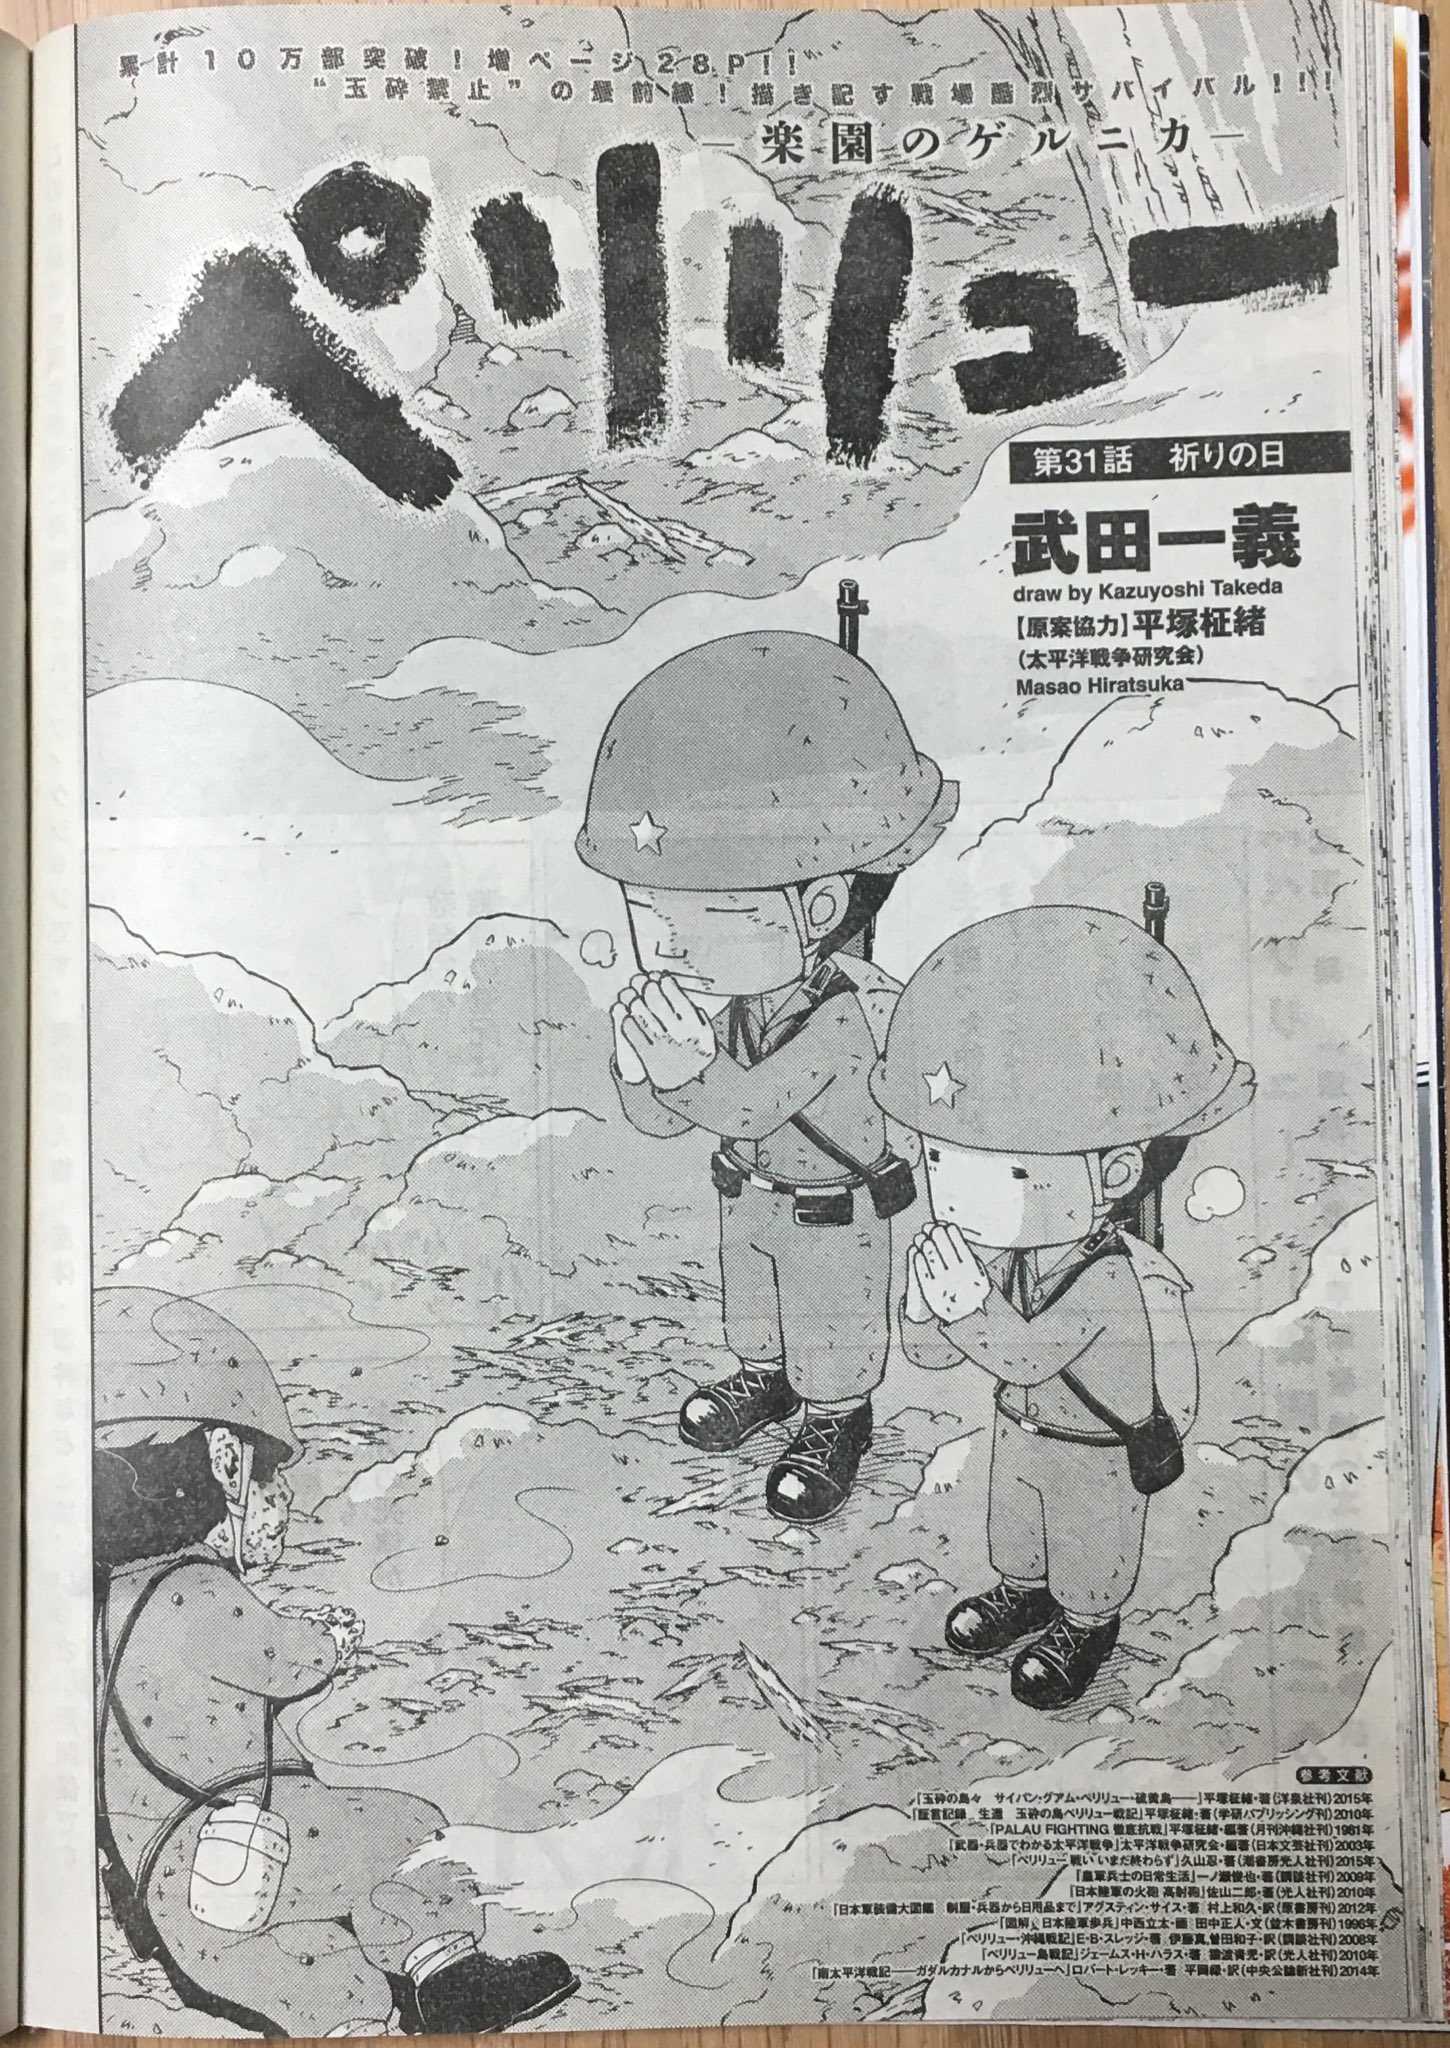 武田一義 ペリリュー10巻発売中 今日発売のヤングアニマルに ペリリュー 楽園のゲルニカ 31話が掲載です 今回が4巻収録分最後のお話になります よろしくお願いします